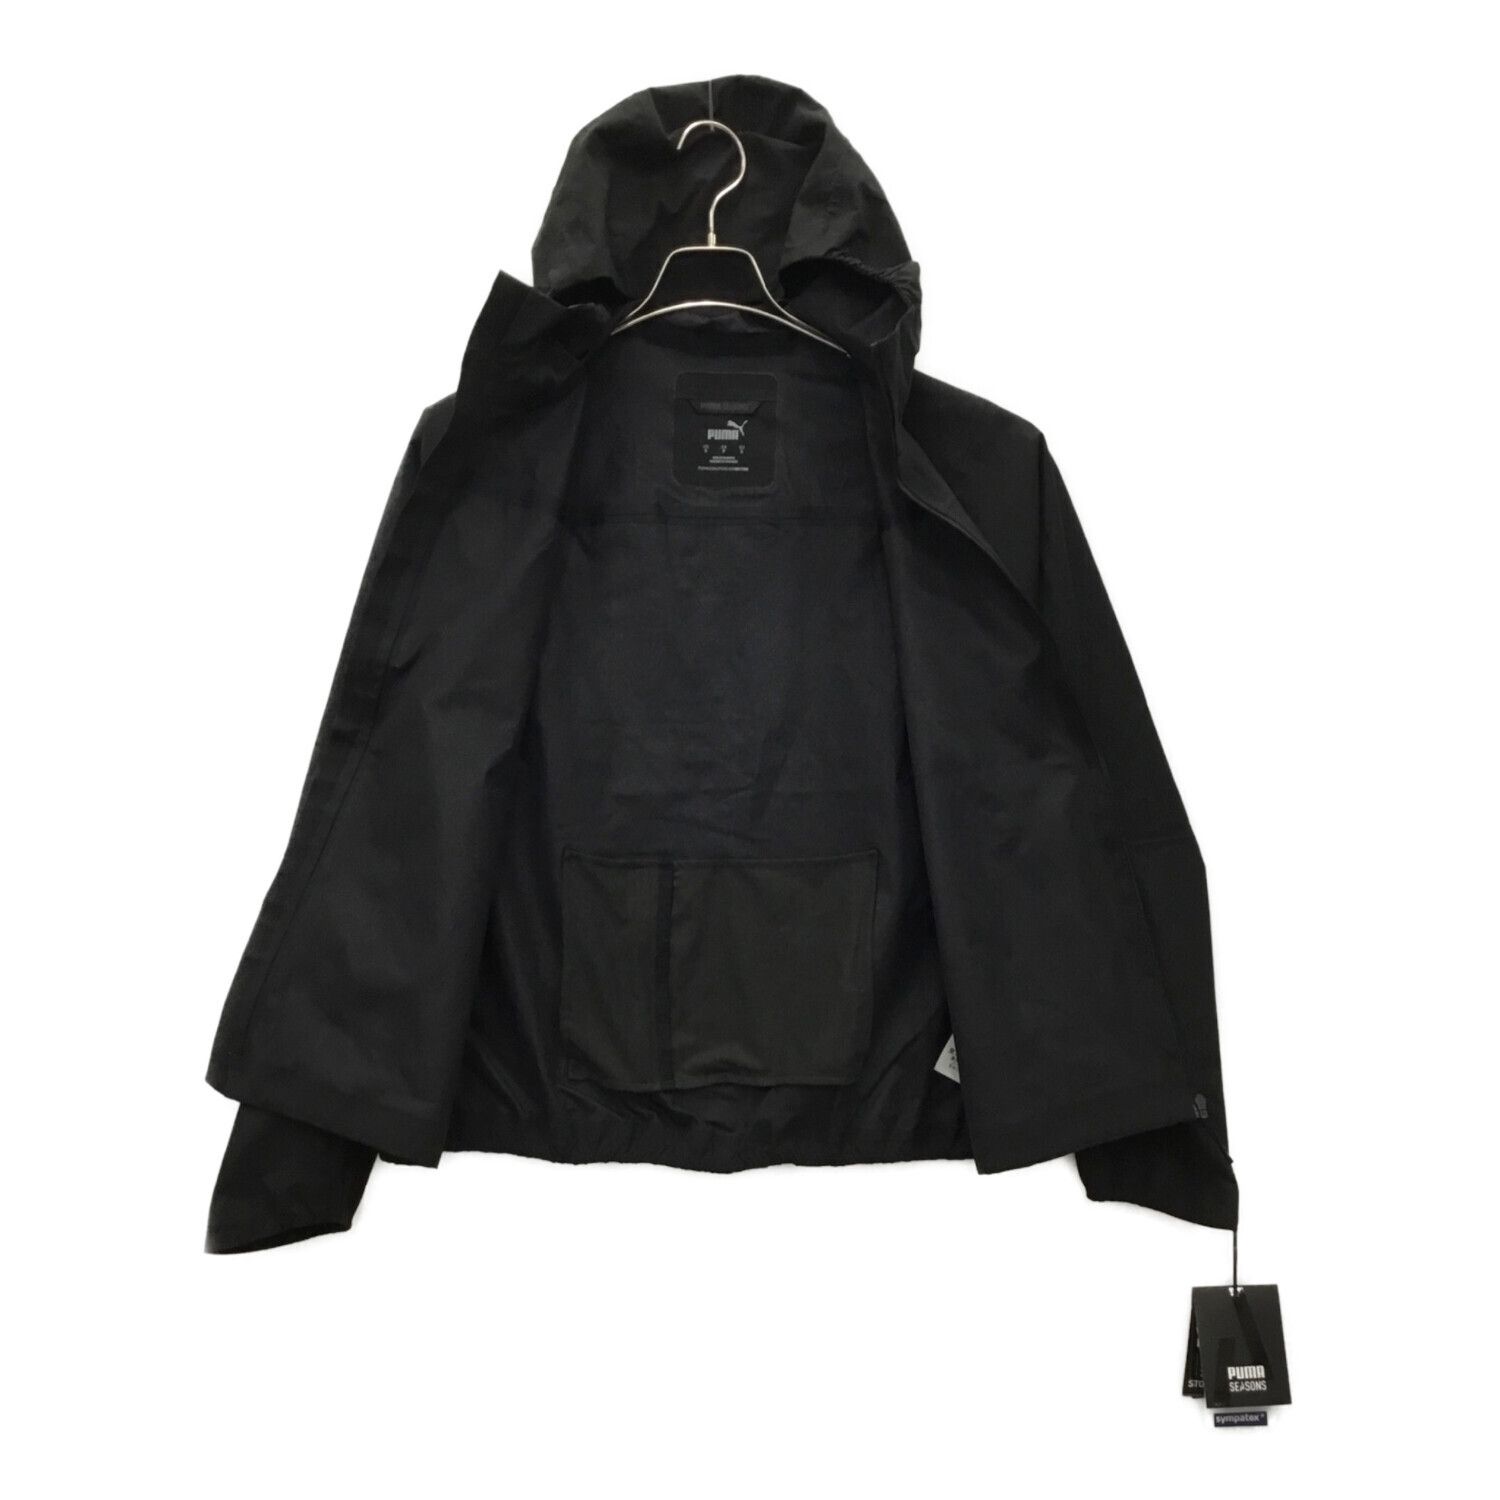 PUMA (プーマ) ランニングジャケット レディース SIZE S ブラック